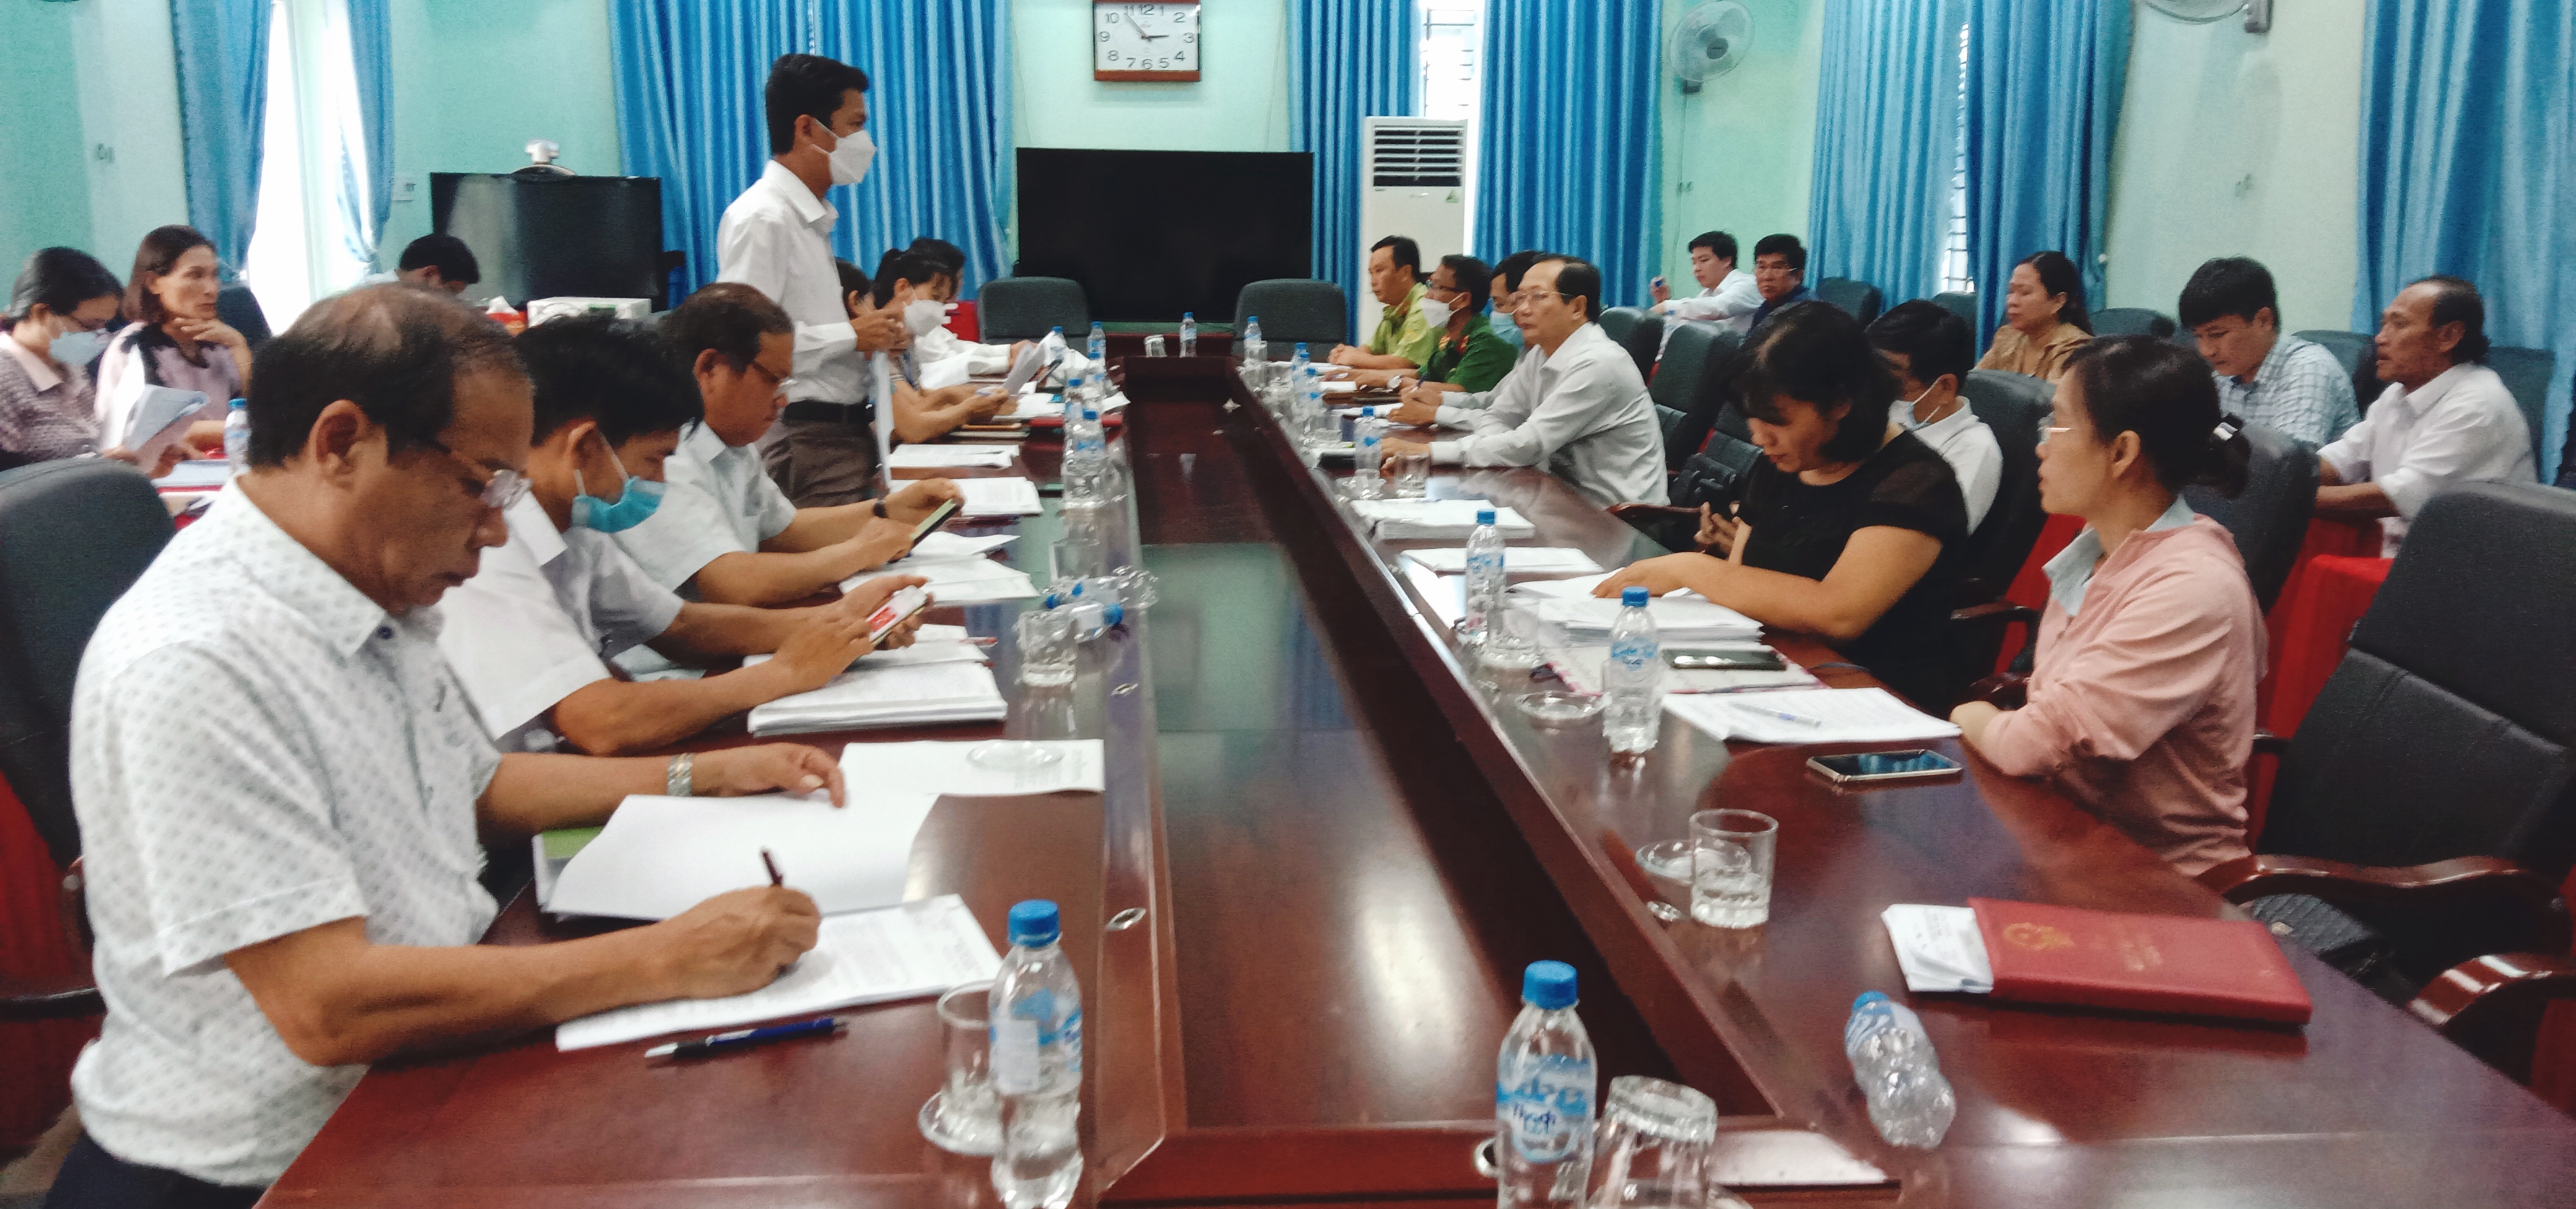 Sở Tư pháp thông qua dự thảo Báo cáo Kết luận kiểm tra công tác ban hành văn bản quy phạm pháp luật tại huyện Trà Bồng